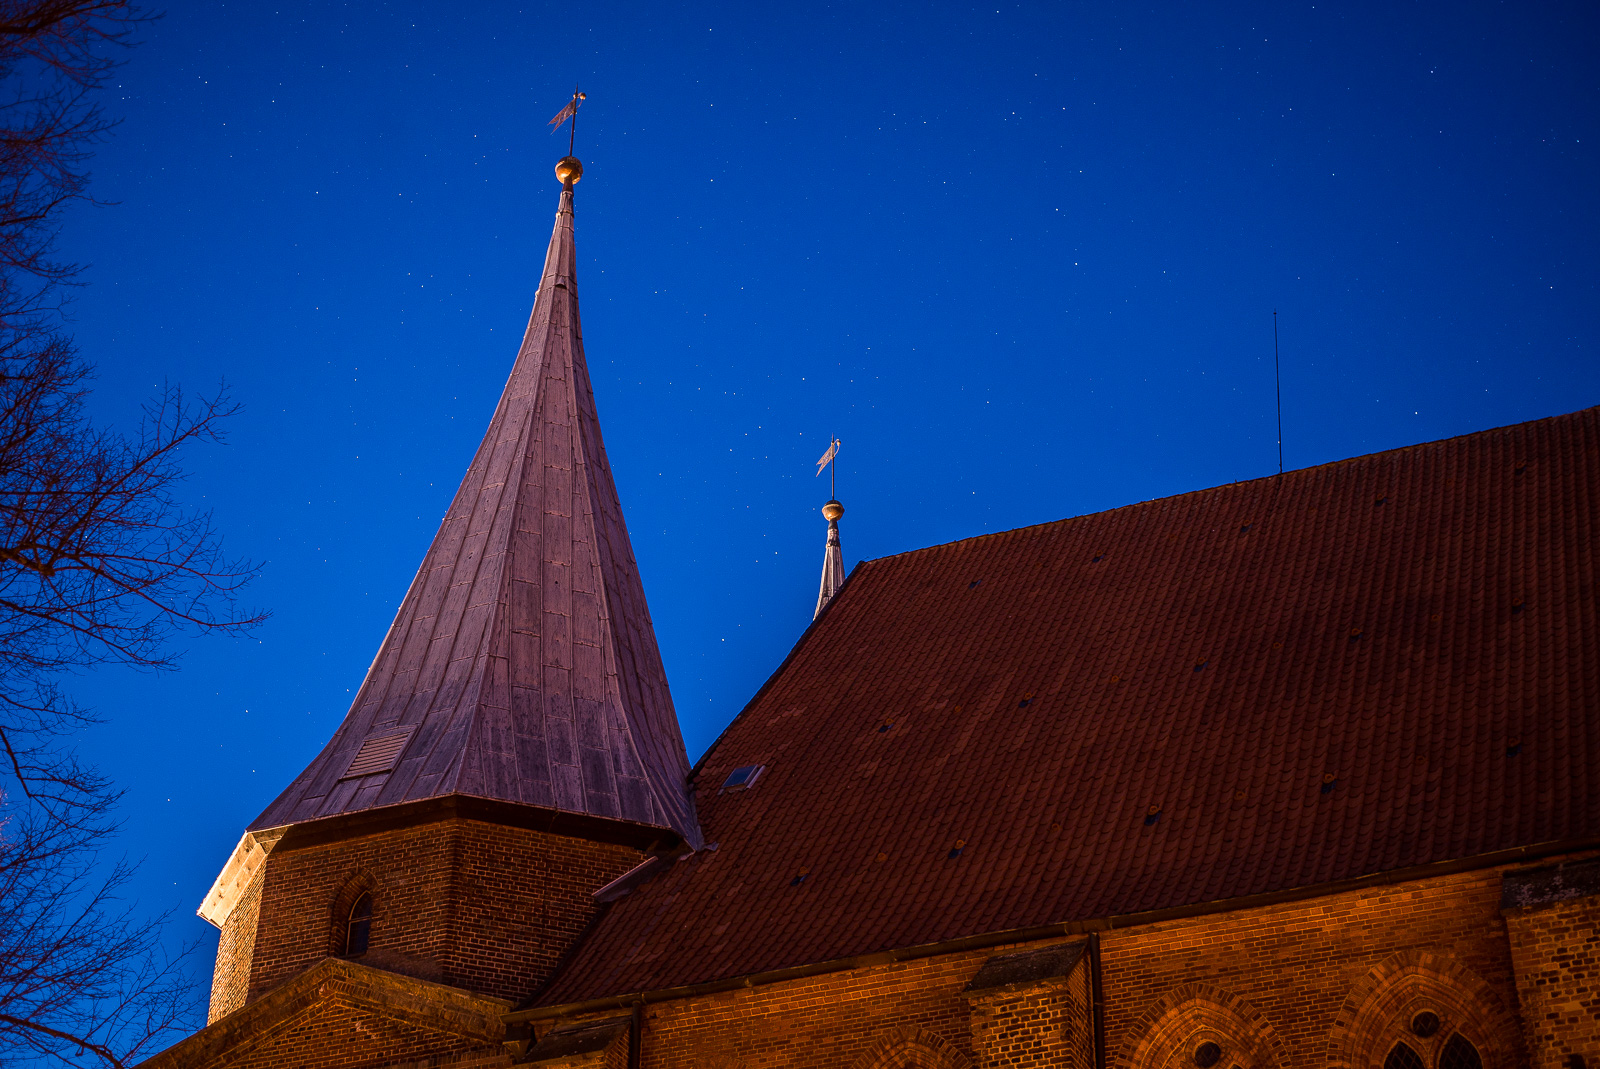 Backstein-Dom von Bardowick: Seitenansicht eines Spitzturms vor dem Nachthimmel mit vielen Sternen